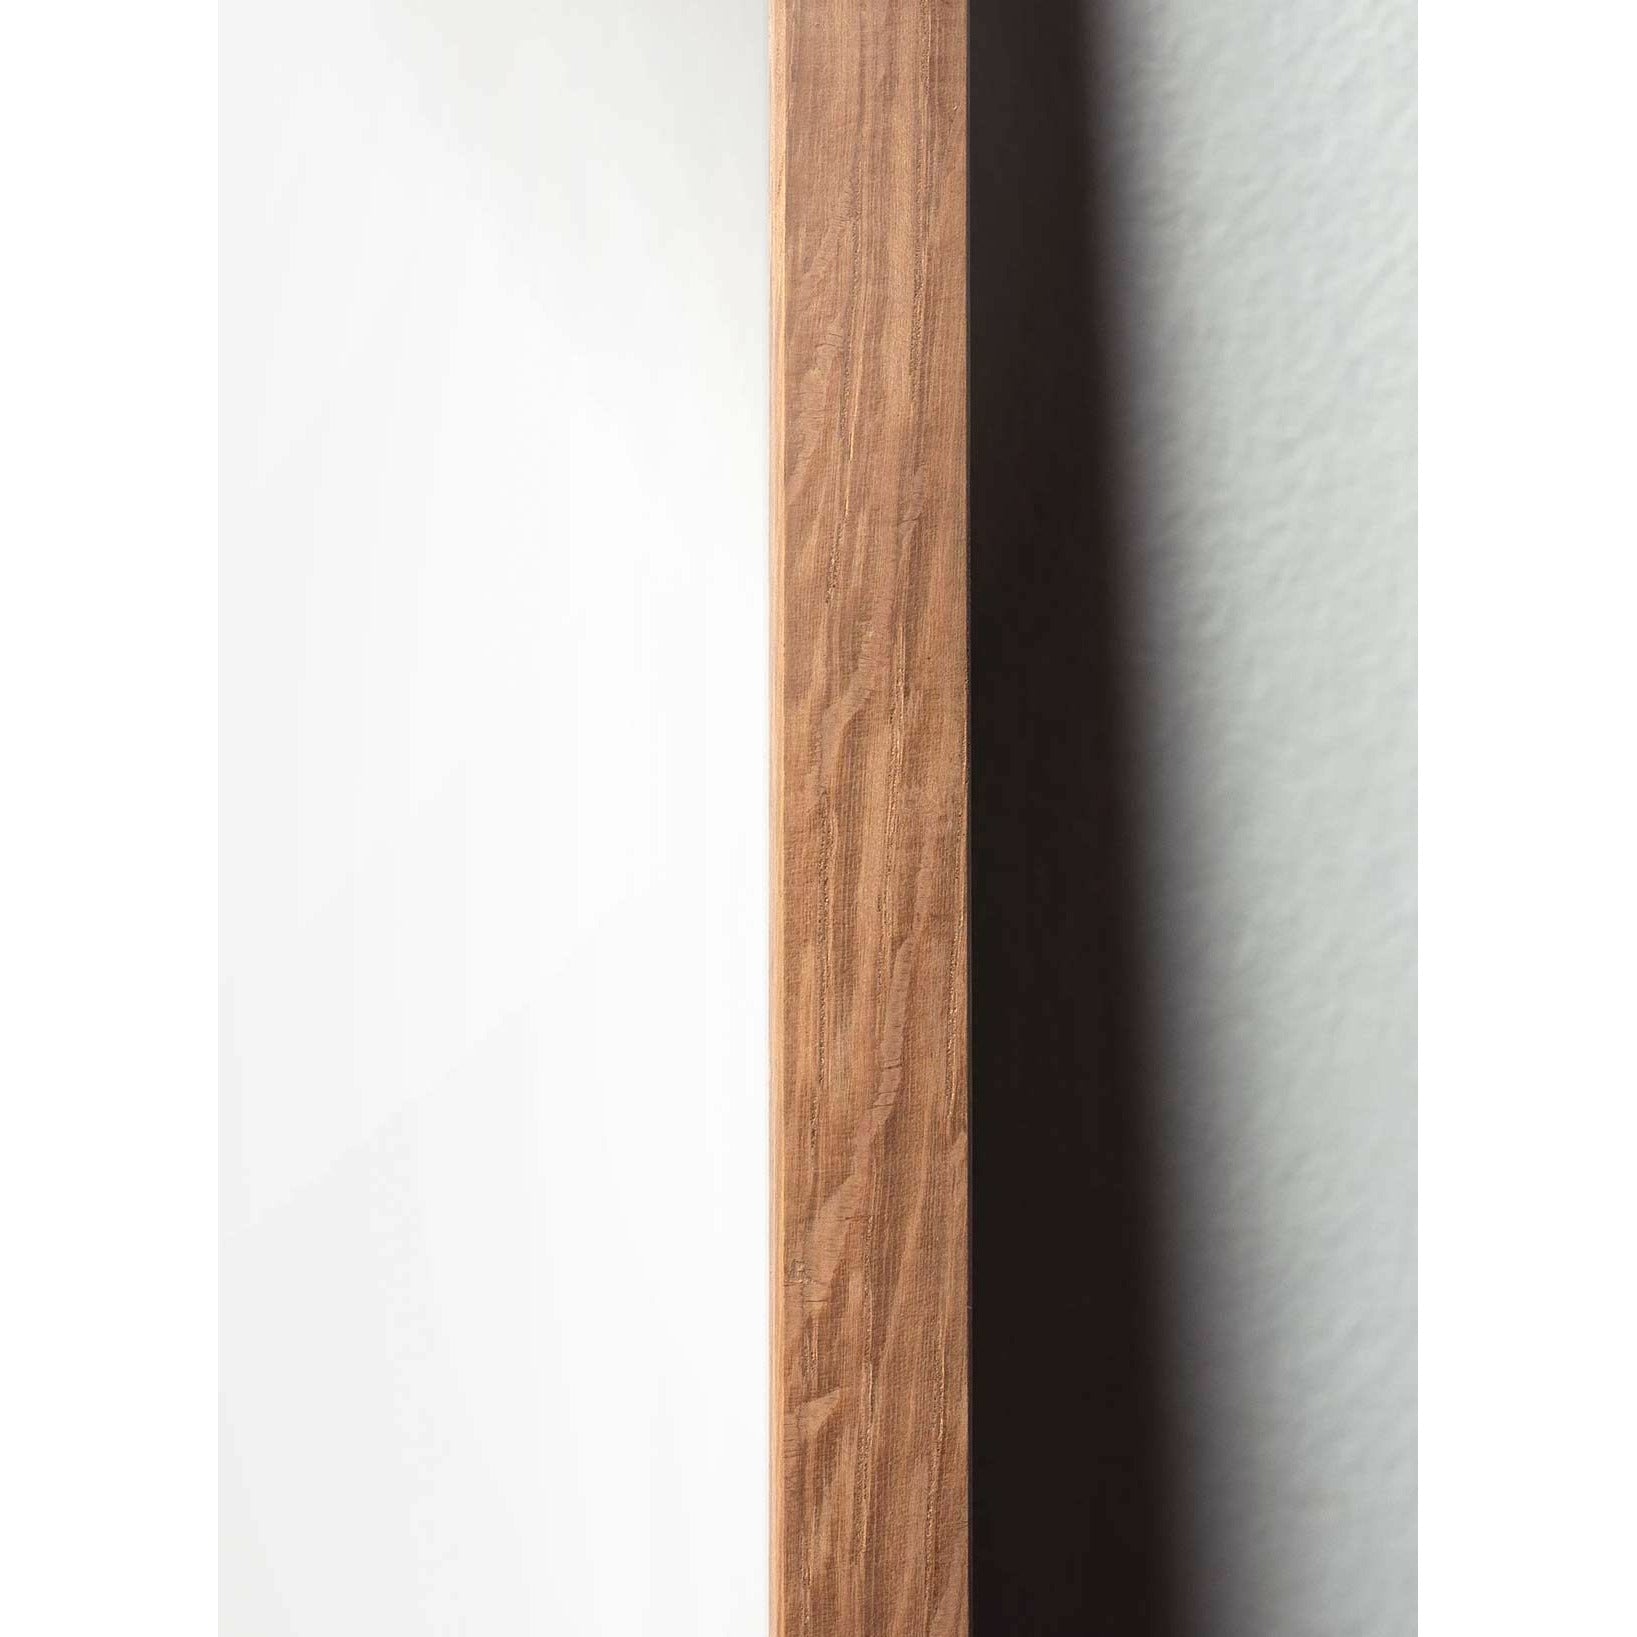 Pomysły plakat linii mrówek, rama wykonana z jasnego drewna 30x40 cm, białe tło